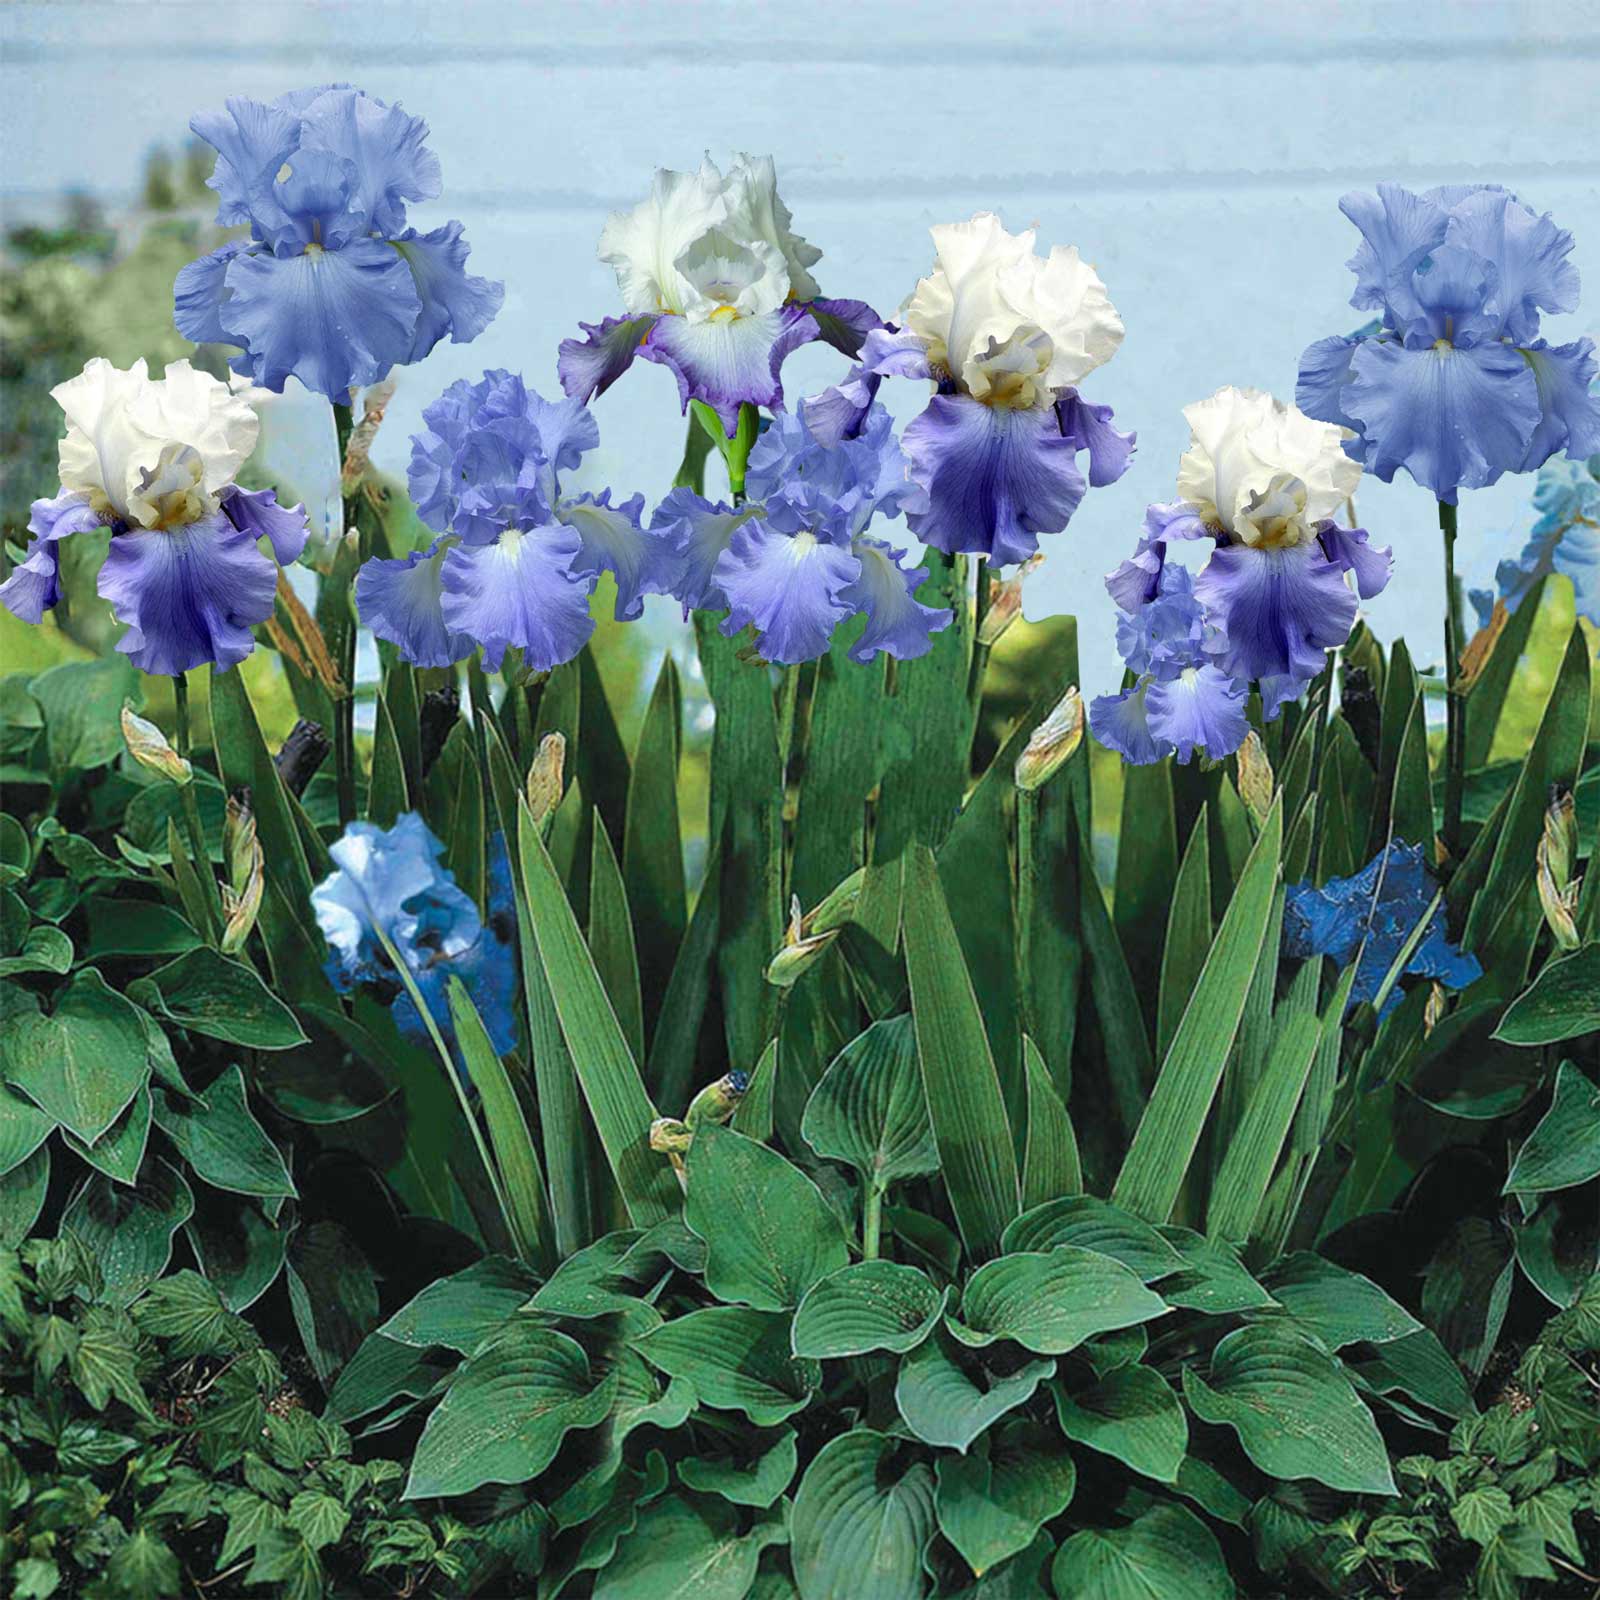 Iris Blue